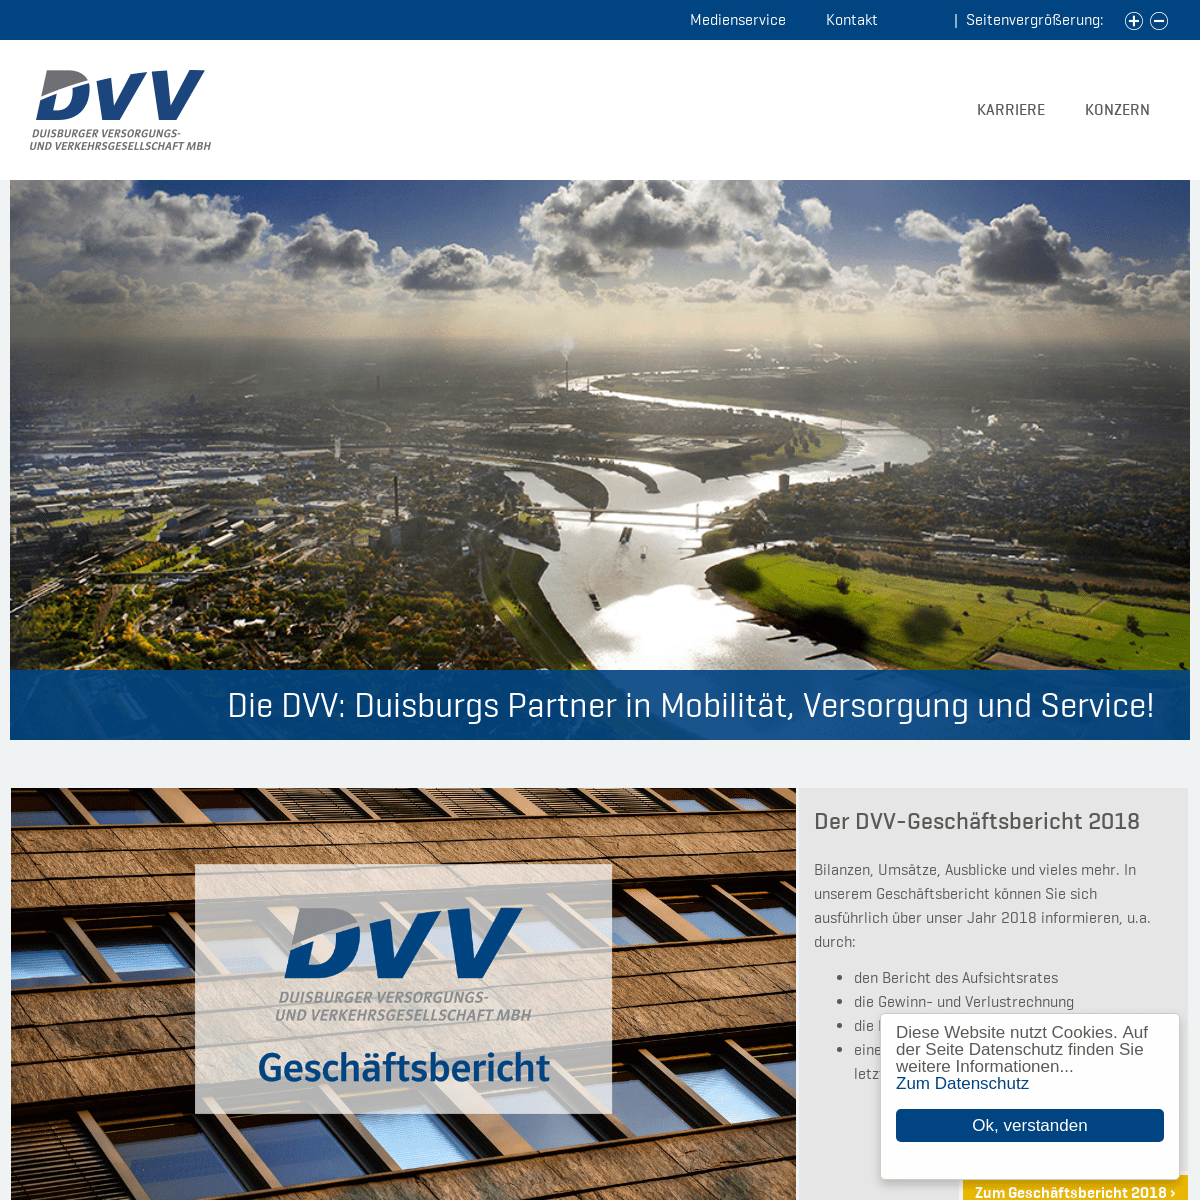 A complete backup of dvv.de